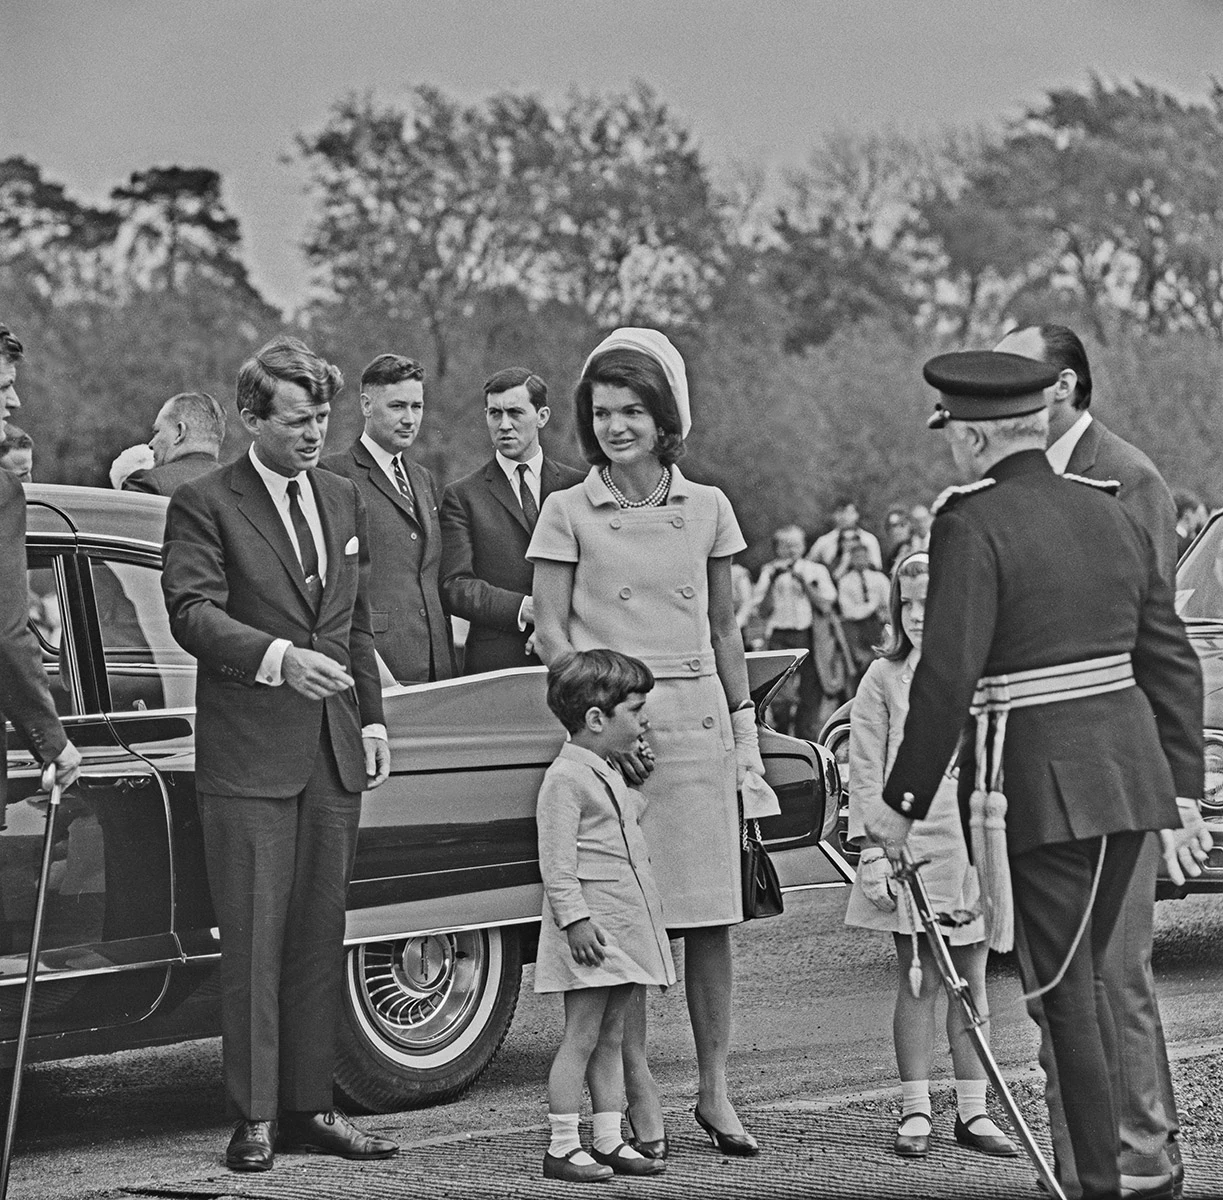 <p>На фото: бывший генеральный прокурор США (1961&ndash;1964 годы) Роберт Кеннеди, а также супруга его брата Жаклин Кеннеди с сыном Джоном Кеннеди-младшим и дочерью Кэролайн Кеннеди на открытии британского мемориала покойному Джону Кеннеди, 14 мая 1965 года. Суррей, Великобритания</p>